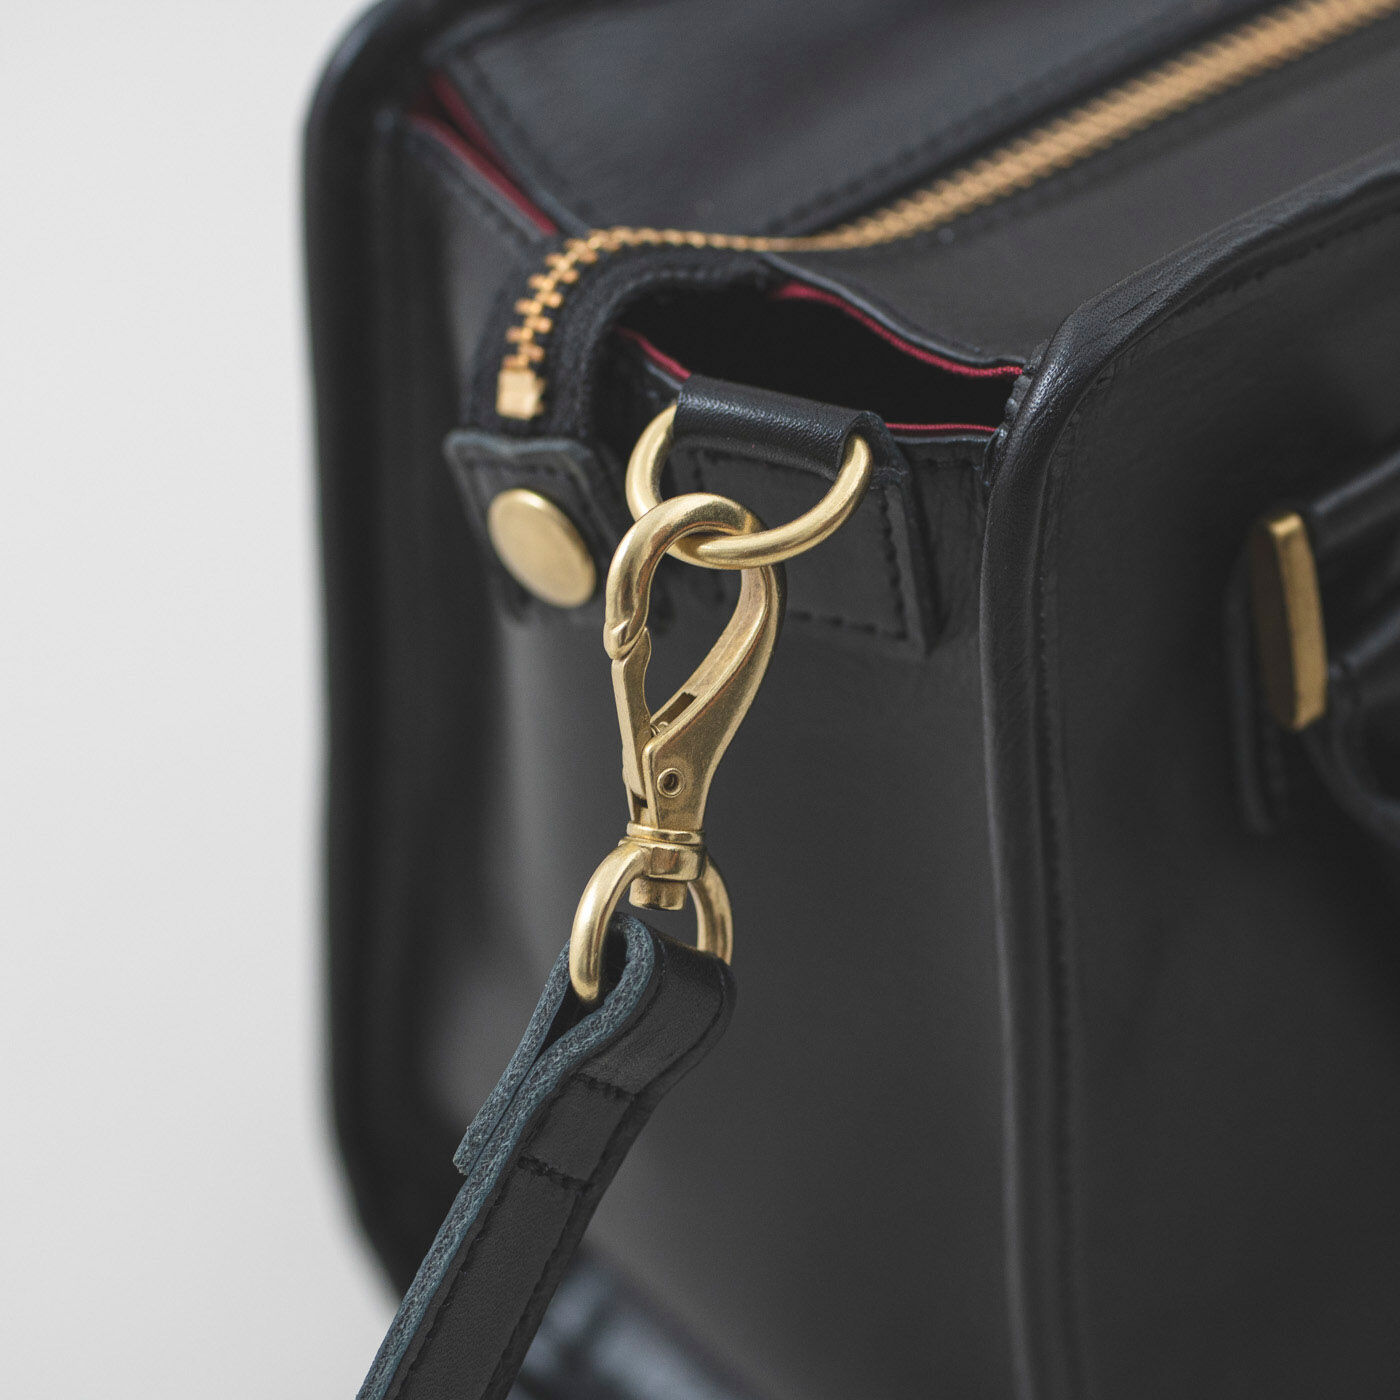 ＆Stories|鞄職人と鞄デザイナーが作った 職人本革のグラーヴェバッグ〈ブラック〉|ショルダーストラップは、取り外しができます。